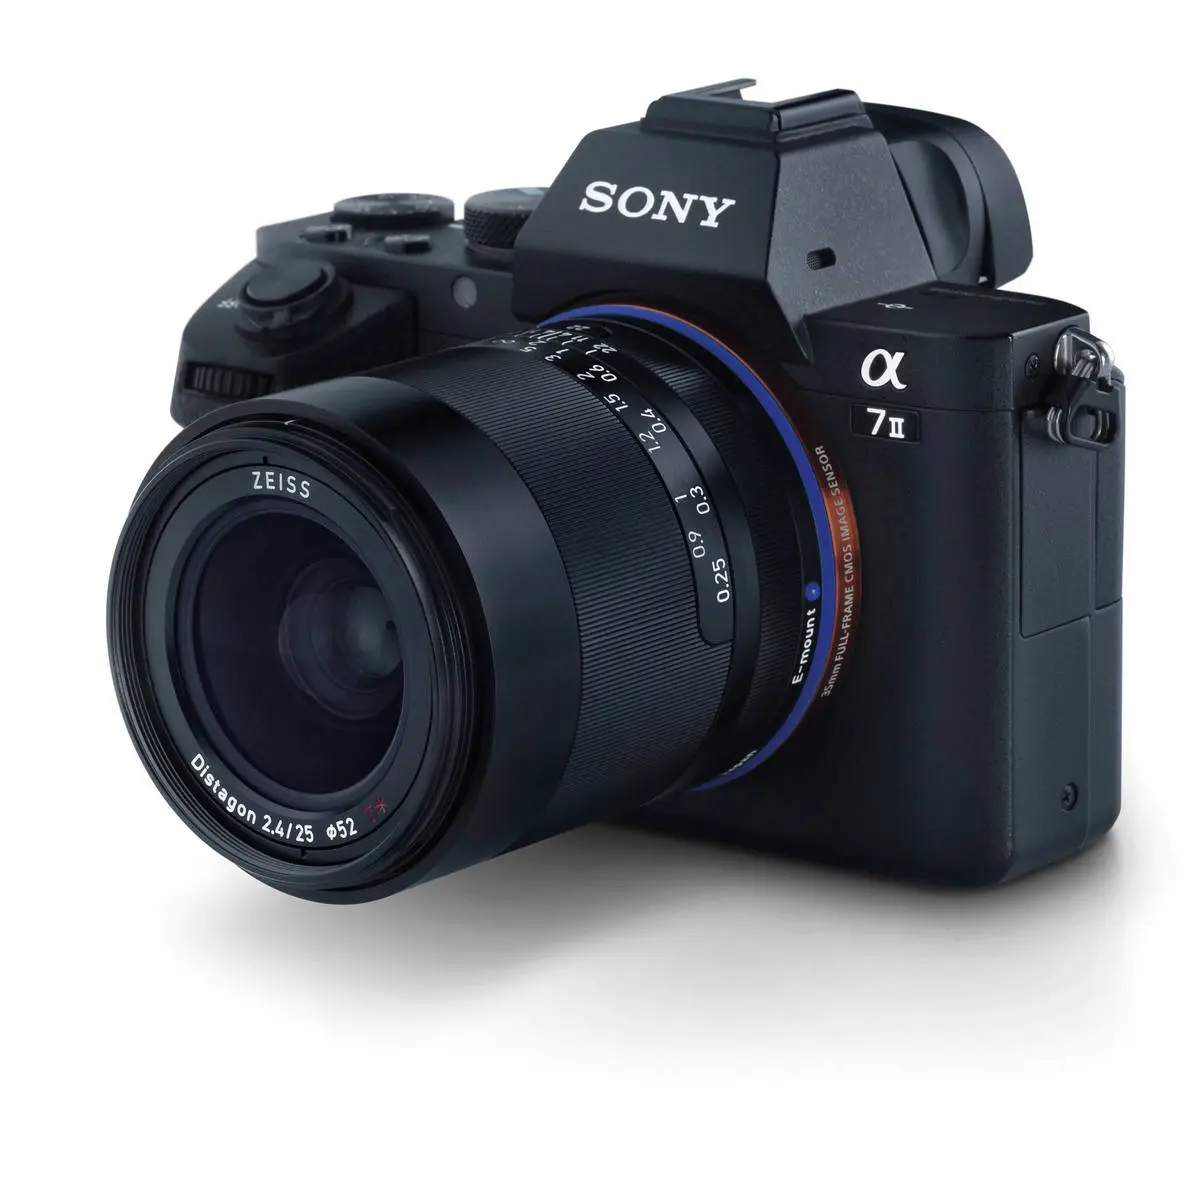 19. Carl Zeiss Loxia 2.4/25 (Sony FE) Lens